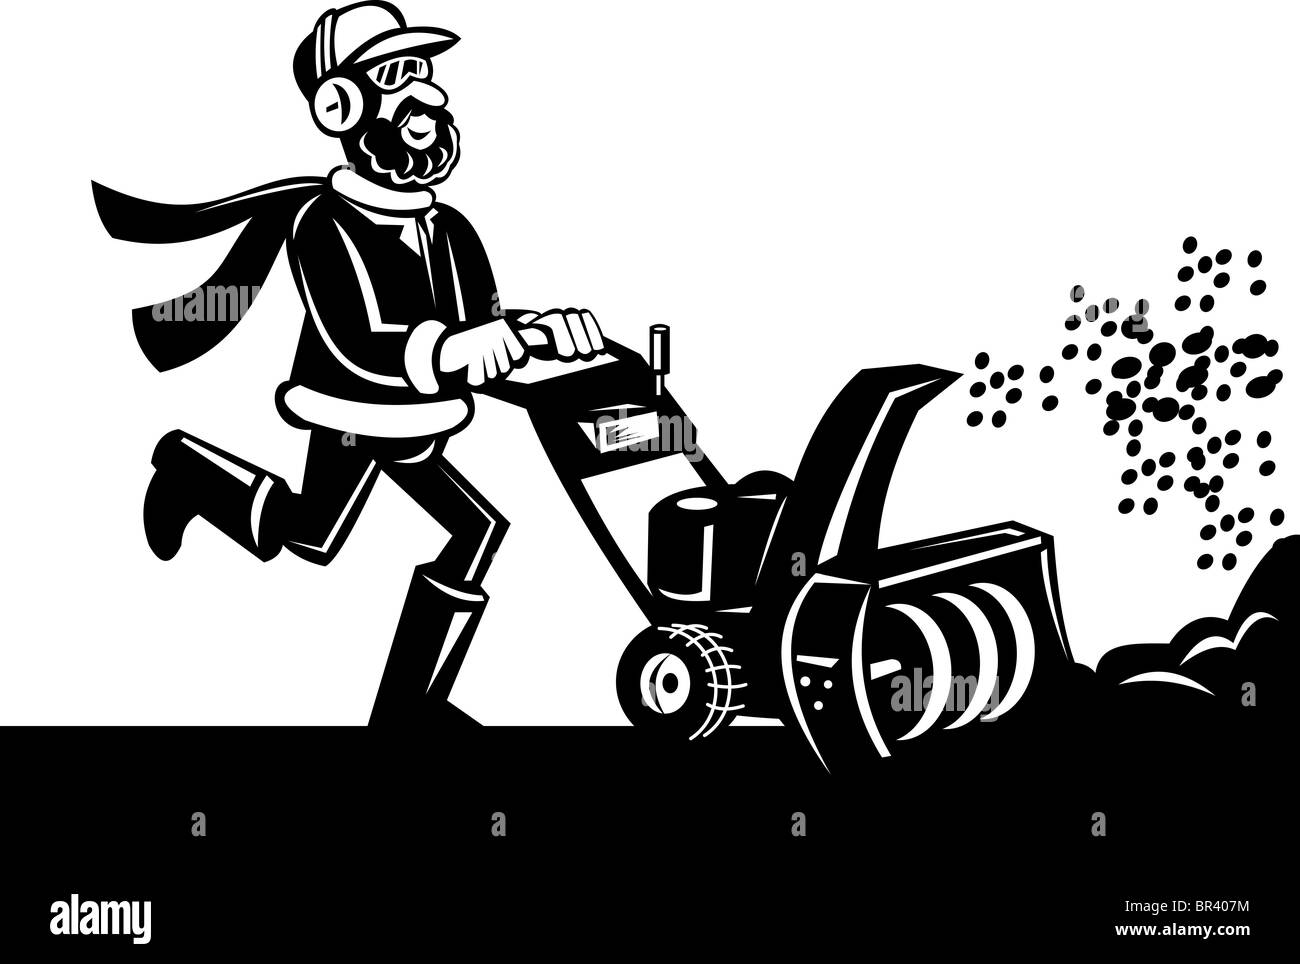 Cartoon-Stil-Vektor-Illustration eines Mannes Betrieb eine Schneefräse oder Schneefräse getan in schwarz und weiß. Stockfoto